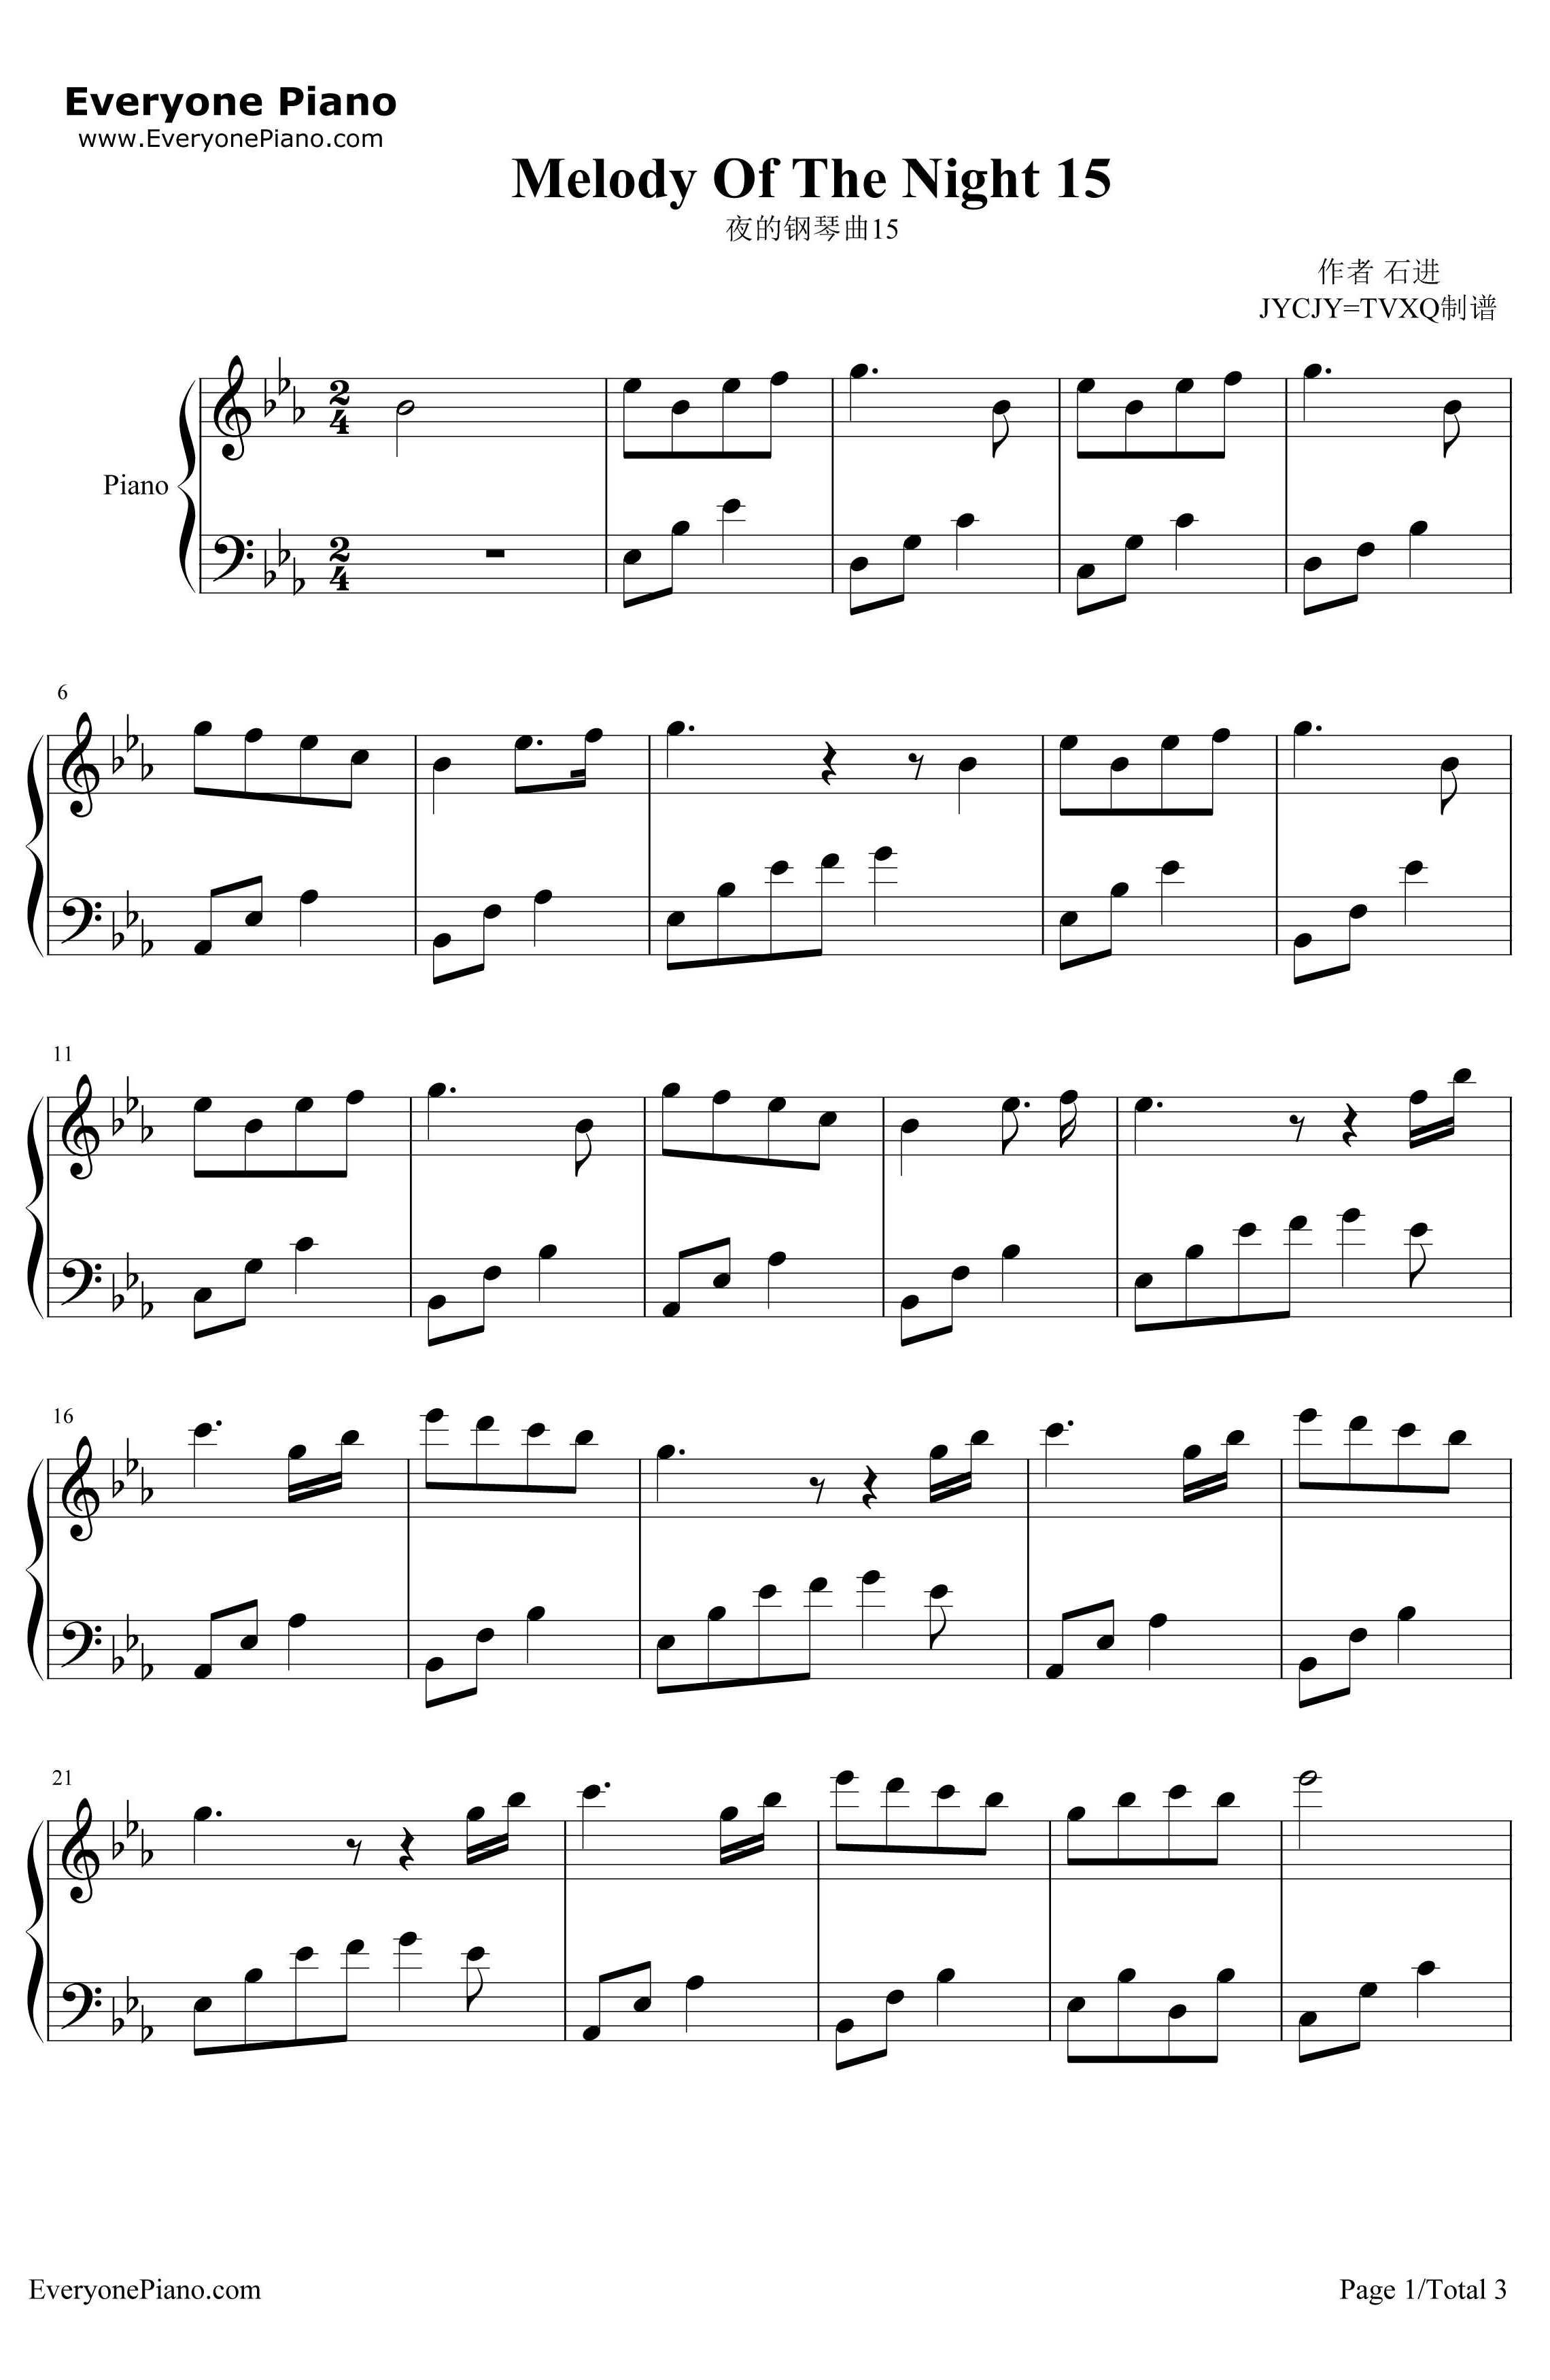 夜的钢琴曲15钢琴谱-石进-夜的钢琴曲151